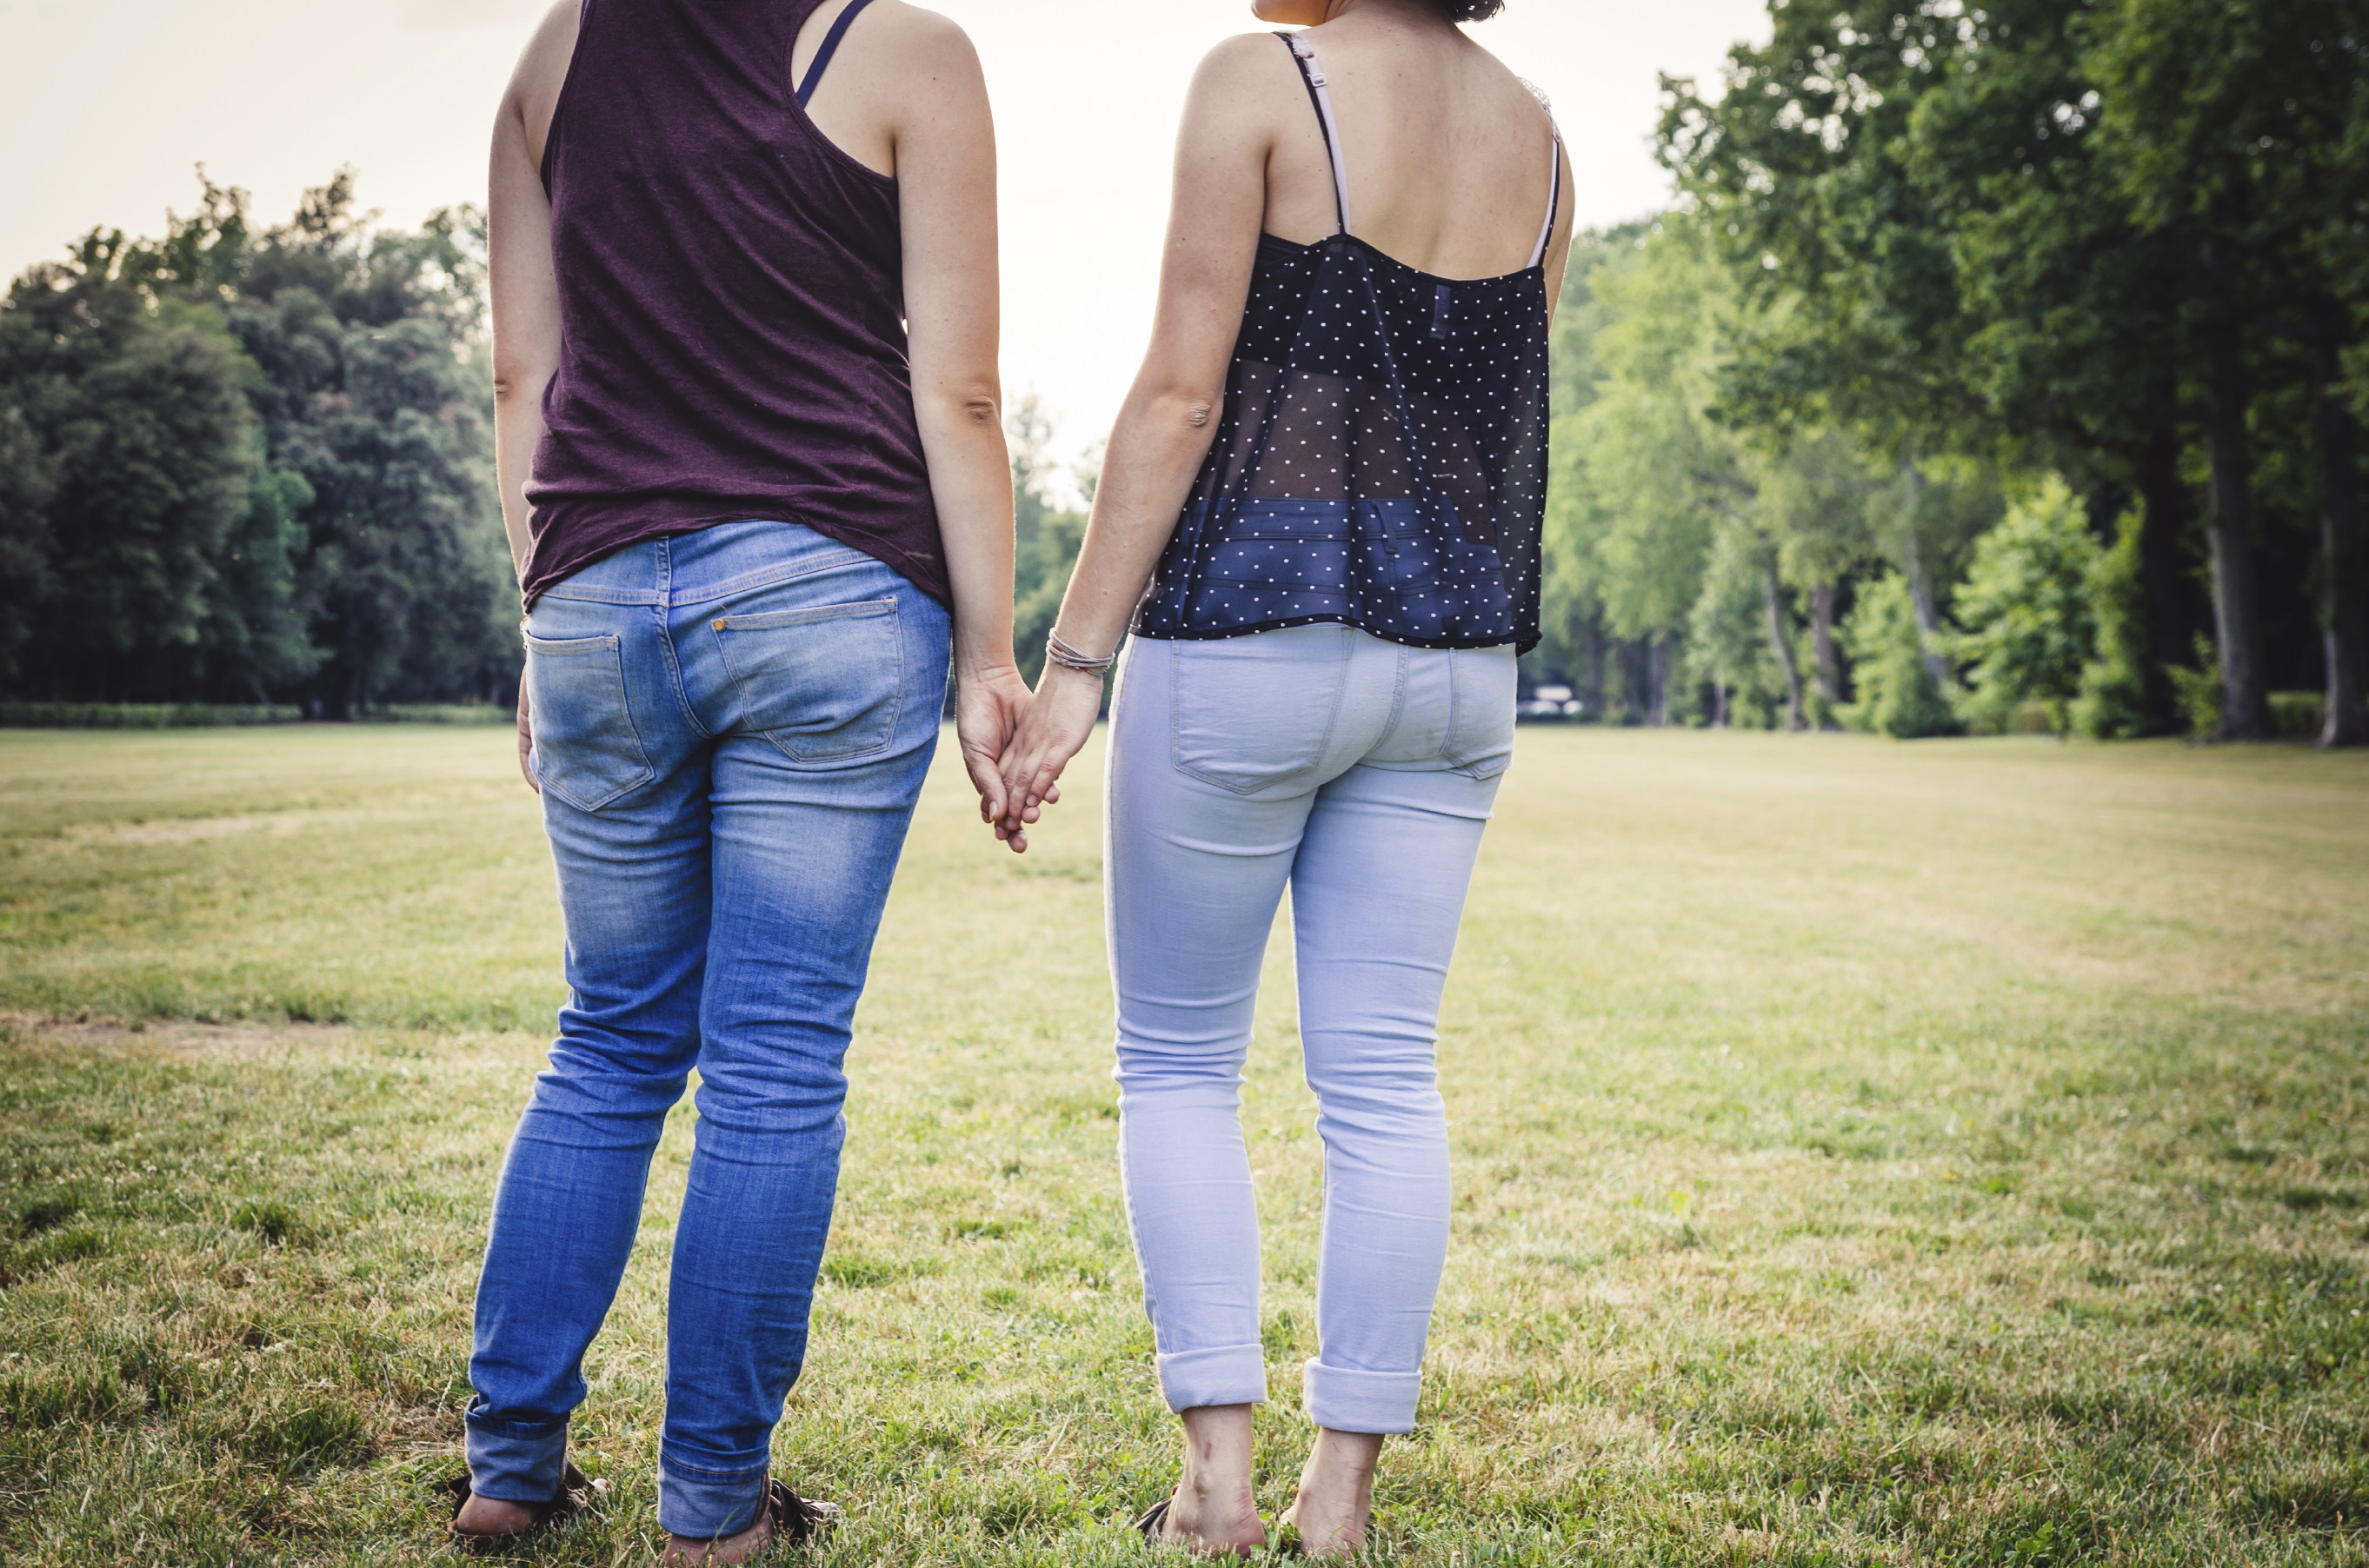 Should Same Sex Couples Receive Fertility Benefits